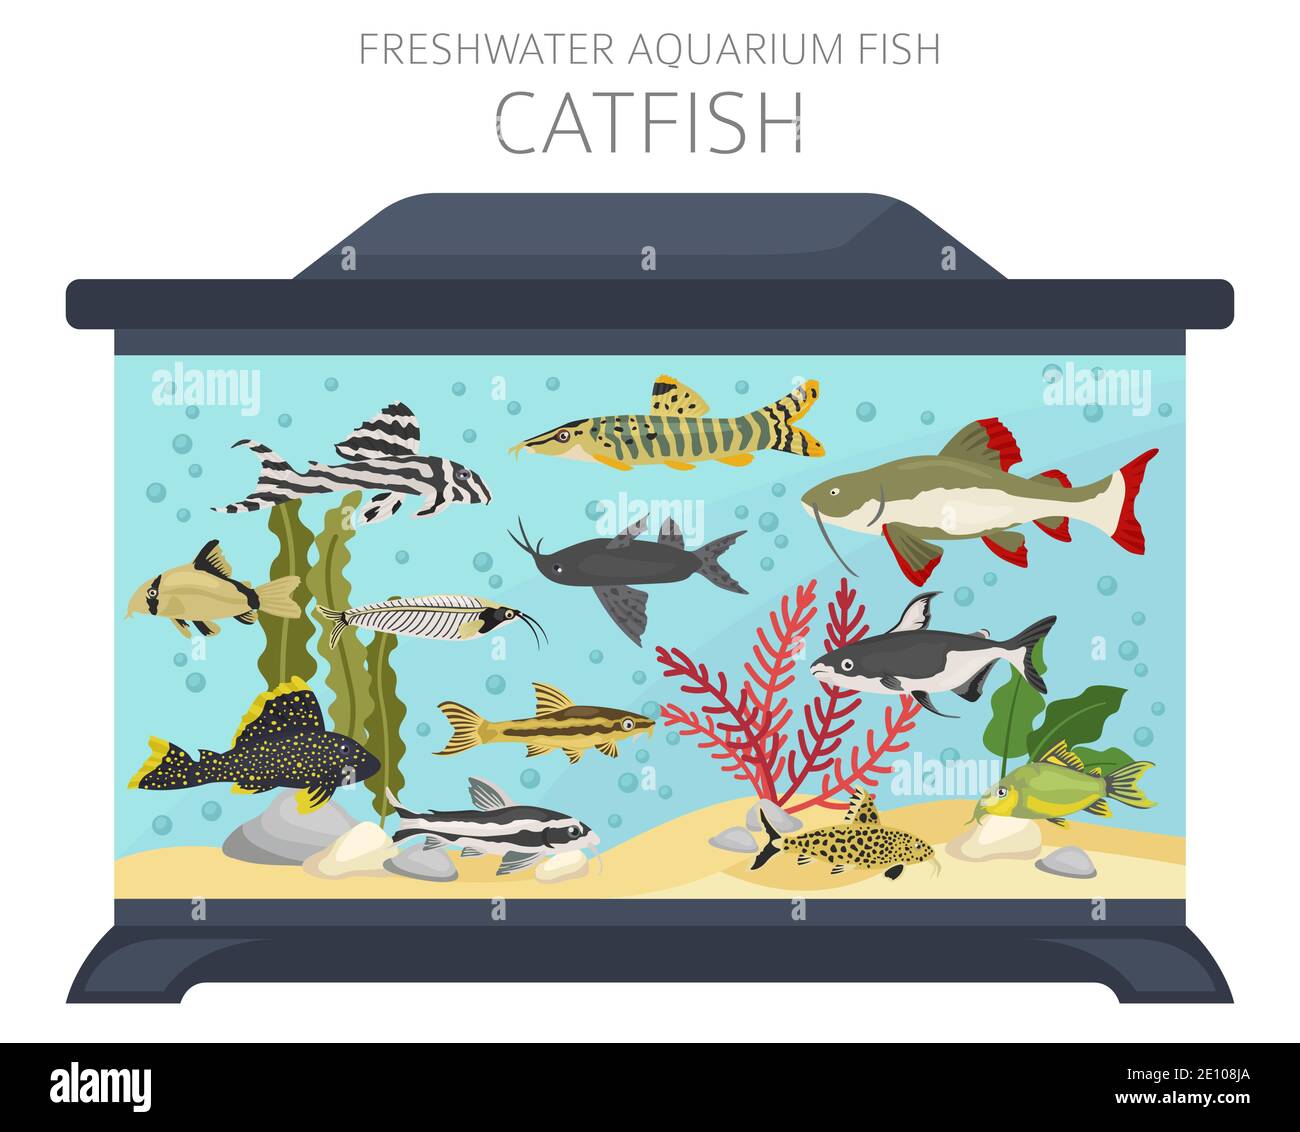 Catfish. Freshwater aquarium fish icon set flat style isolated on white.  Vector illustration Stock Vector